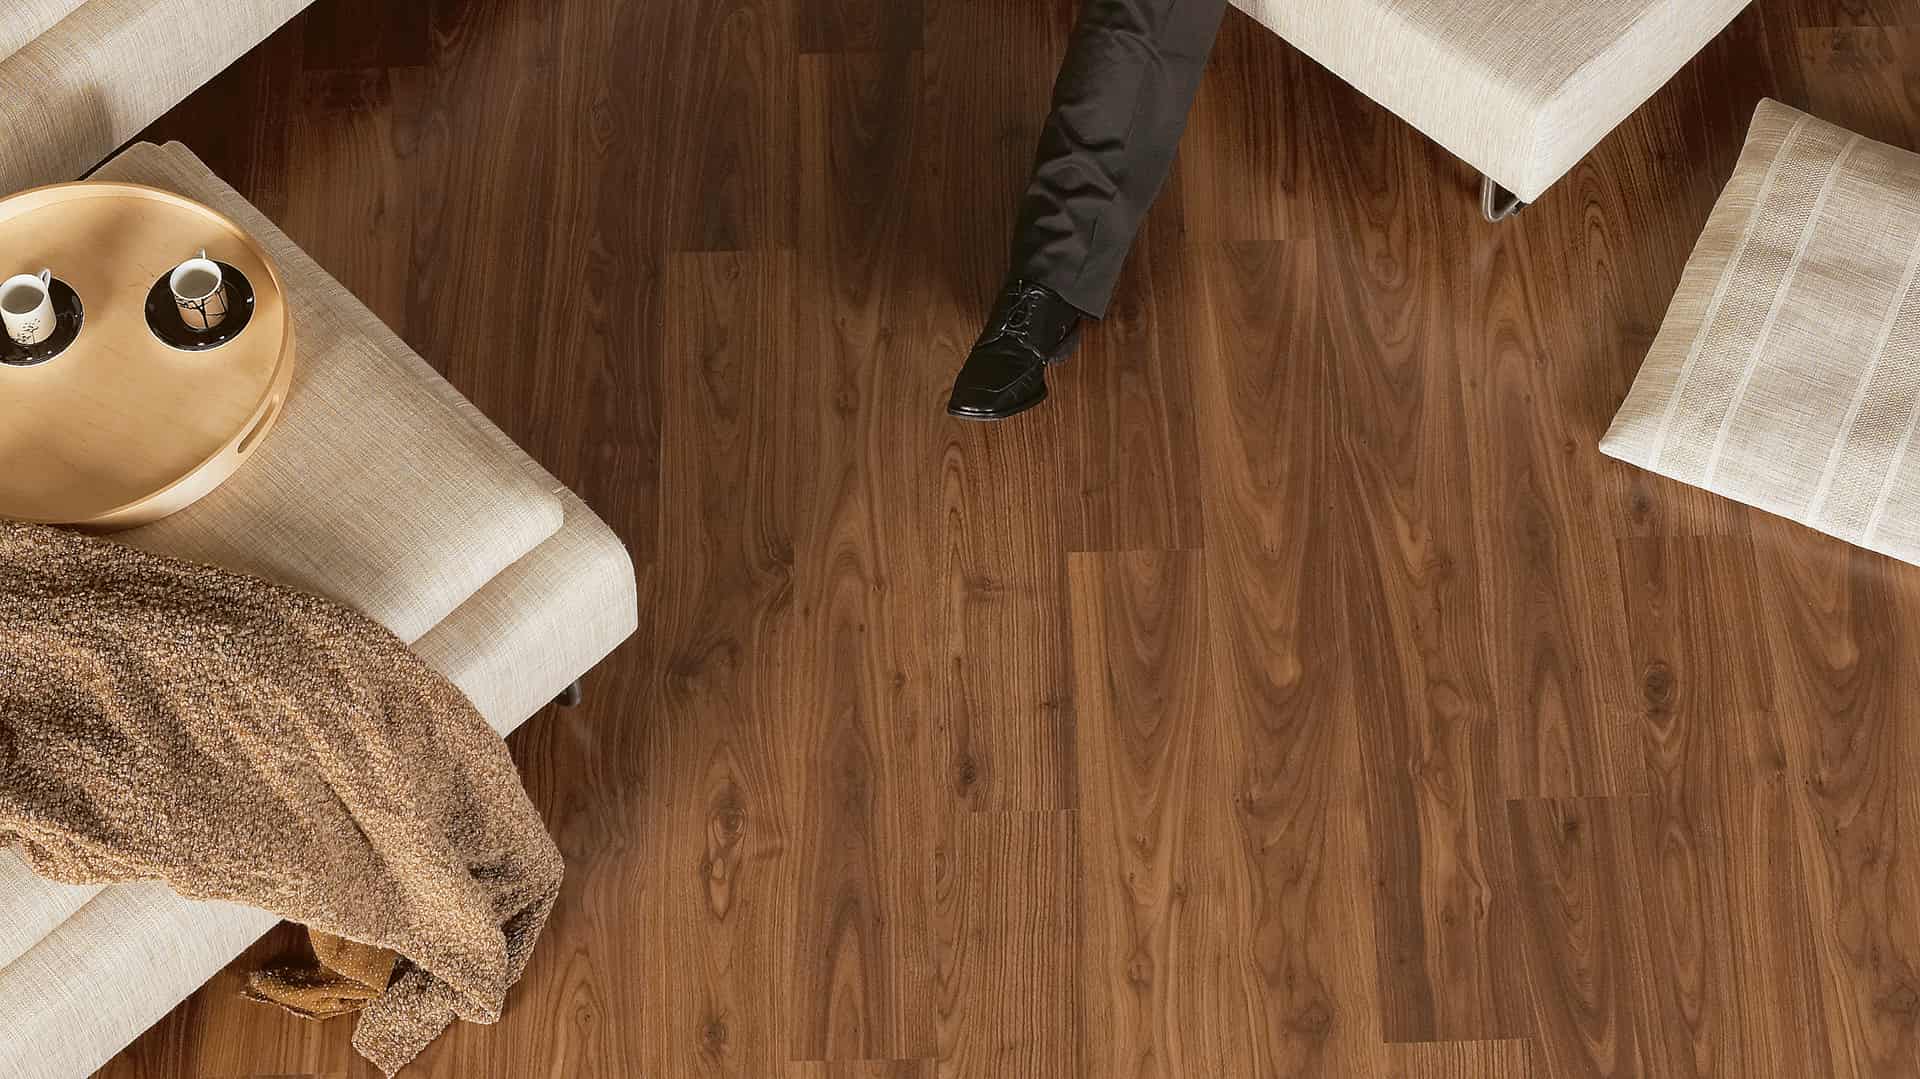 Walnut laminate flooring in living room